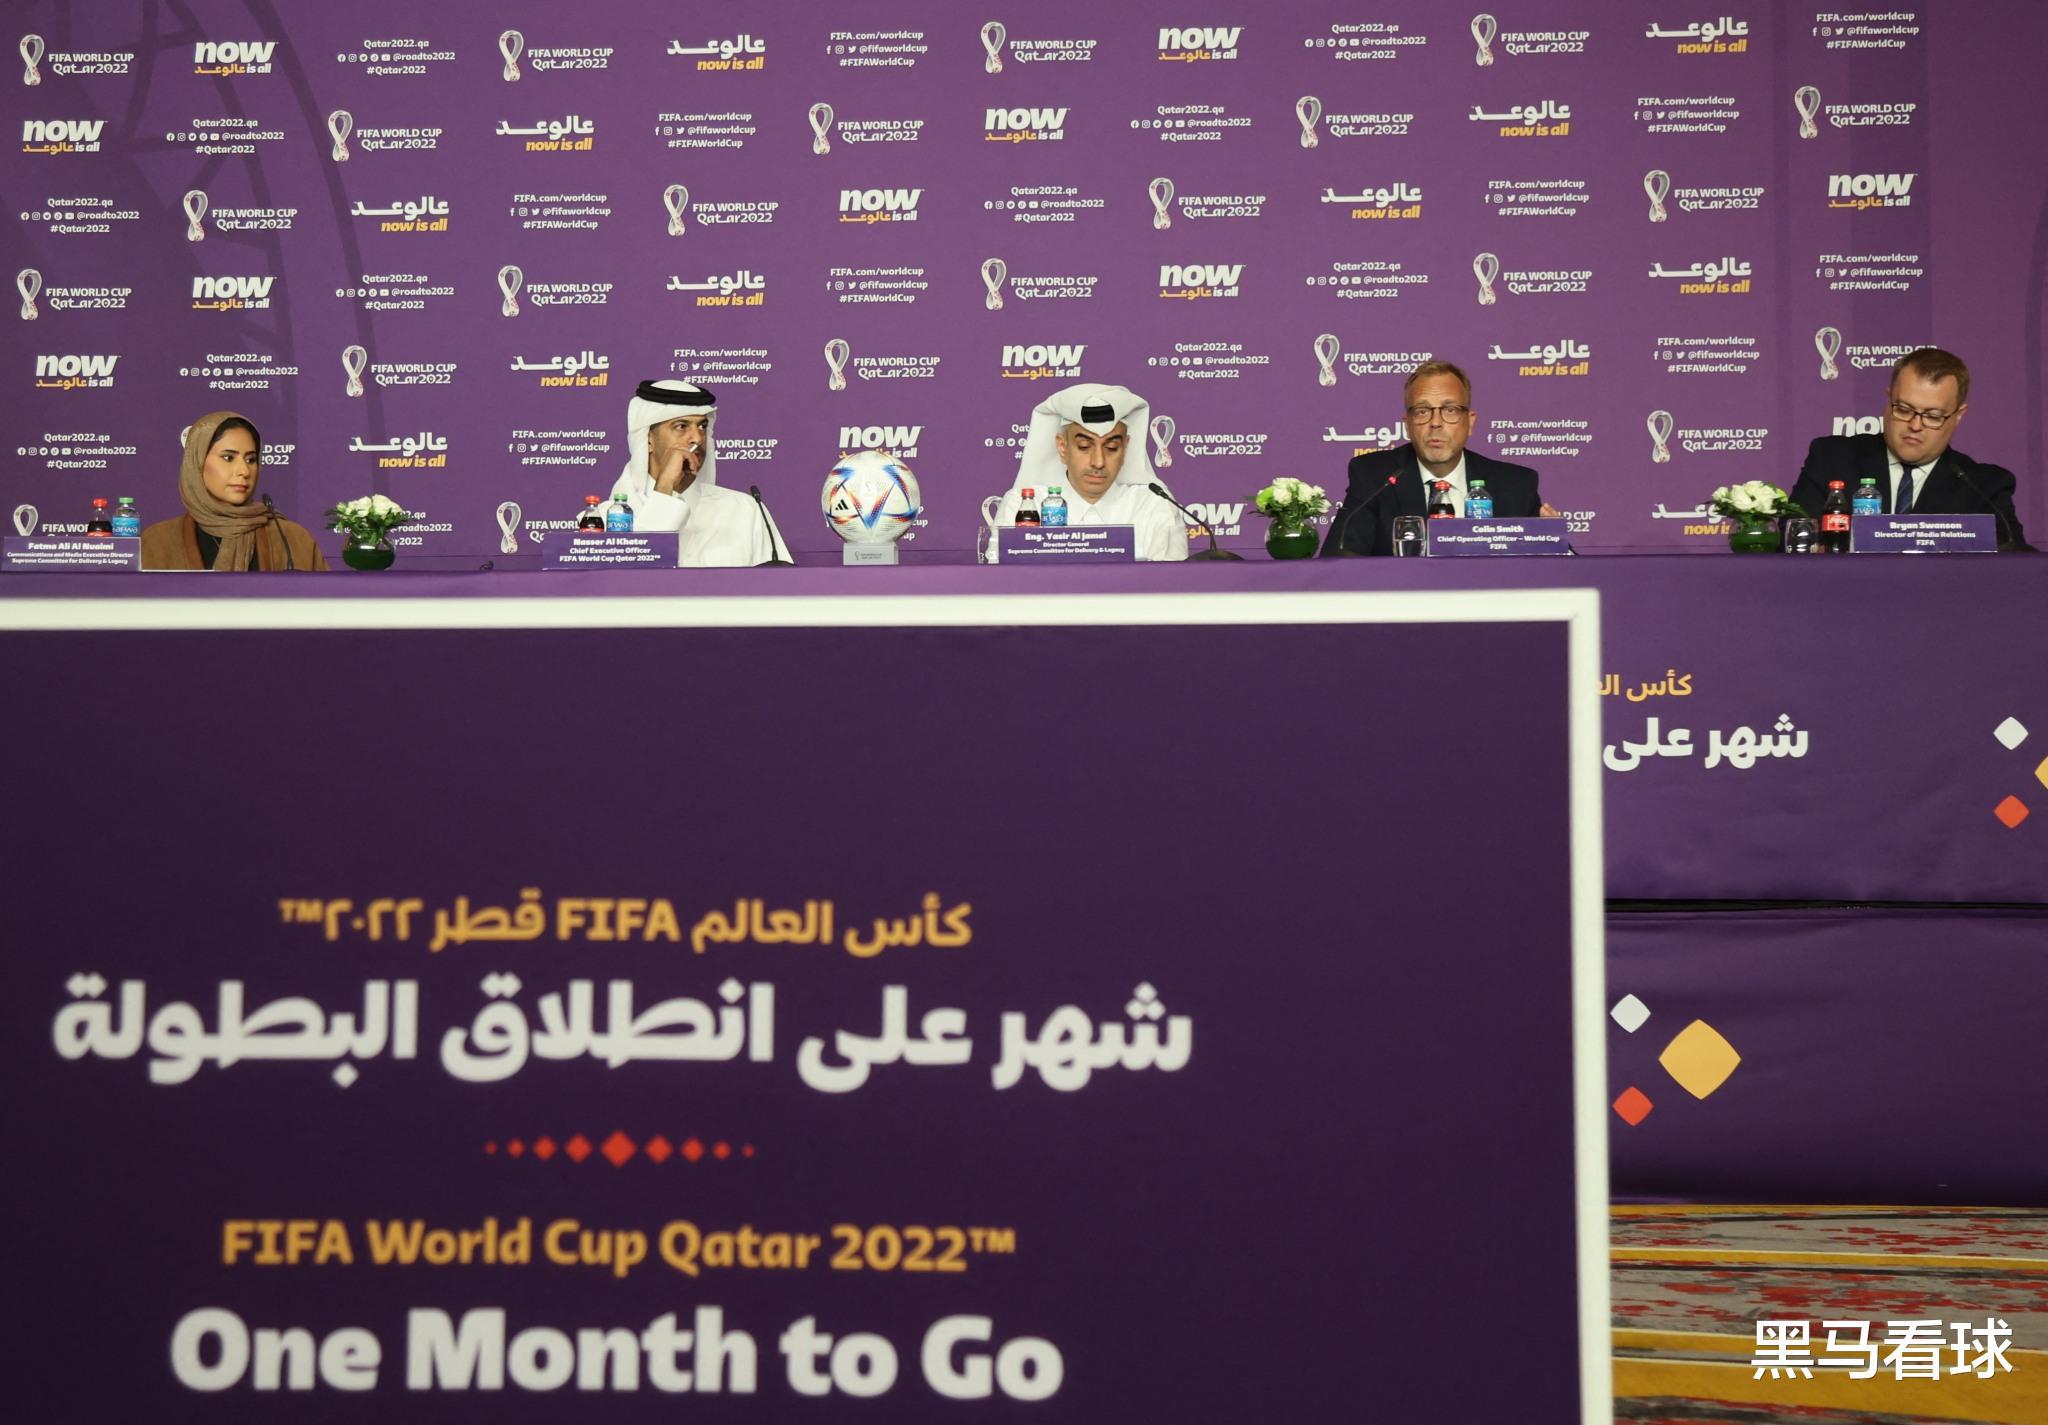 卡塔尔世界杯门票销售创纪录  球迷热度排行榜前十  官方宣称要办“史上最佳”(1)